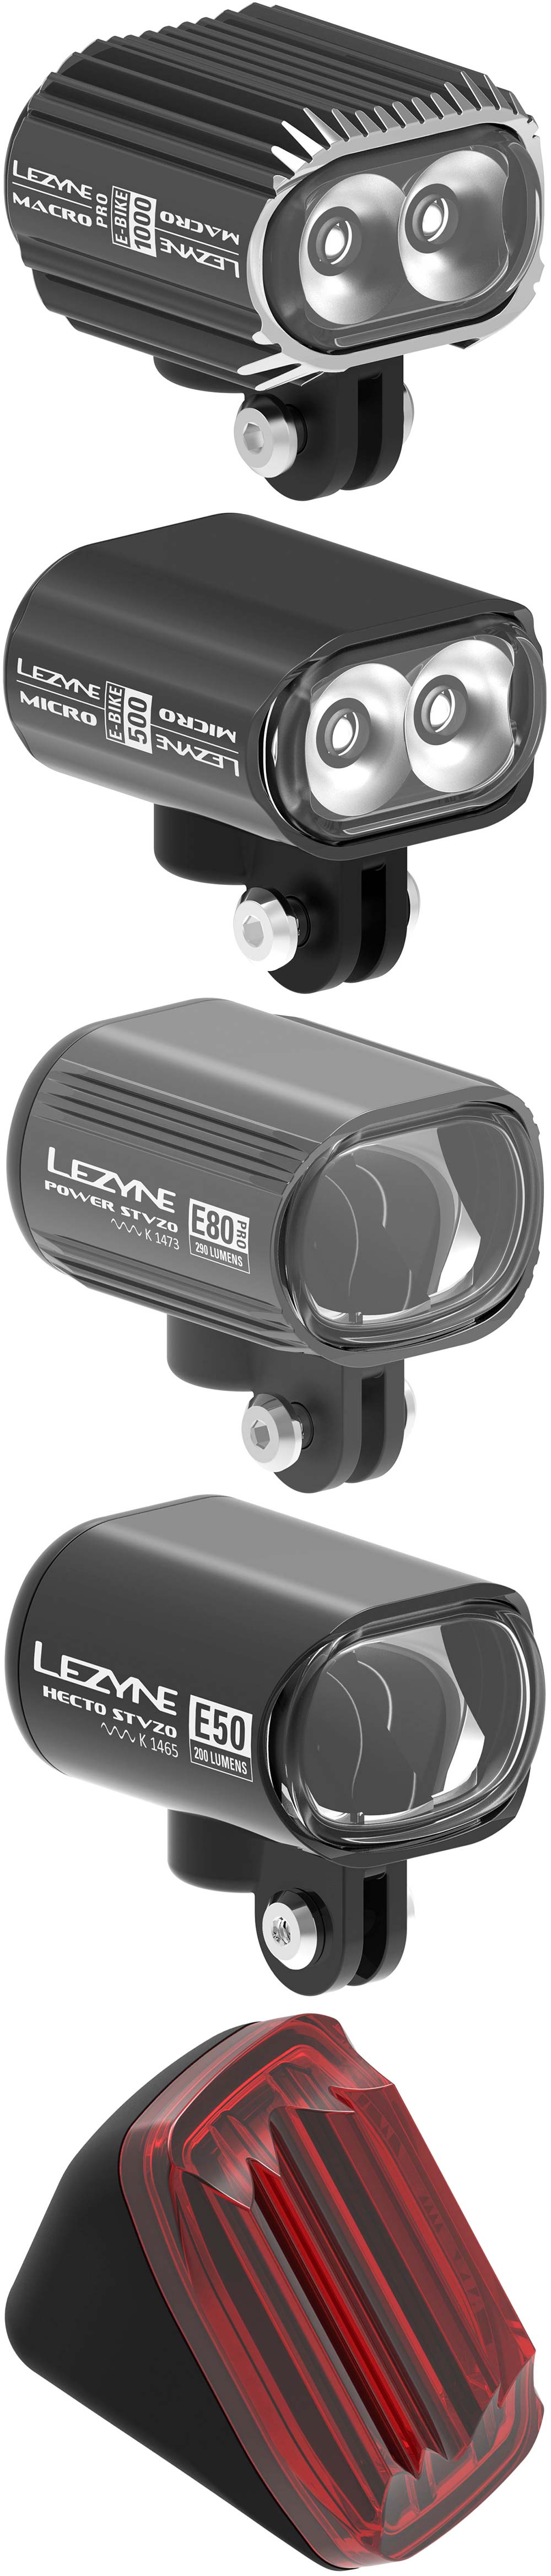 En TodoMountainBike: Lezyne lanza una gama de luces diseñadas para conectarse a la batería de cualquier bicicleta eléctrica